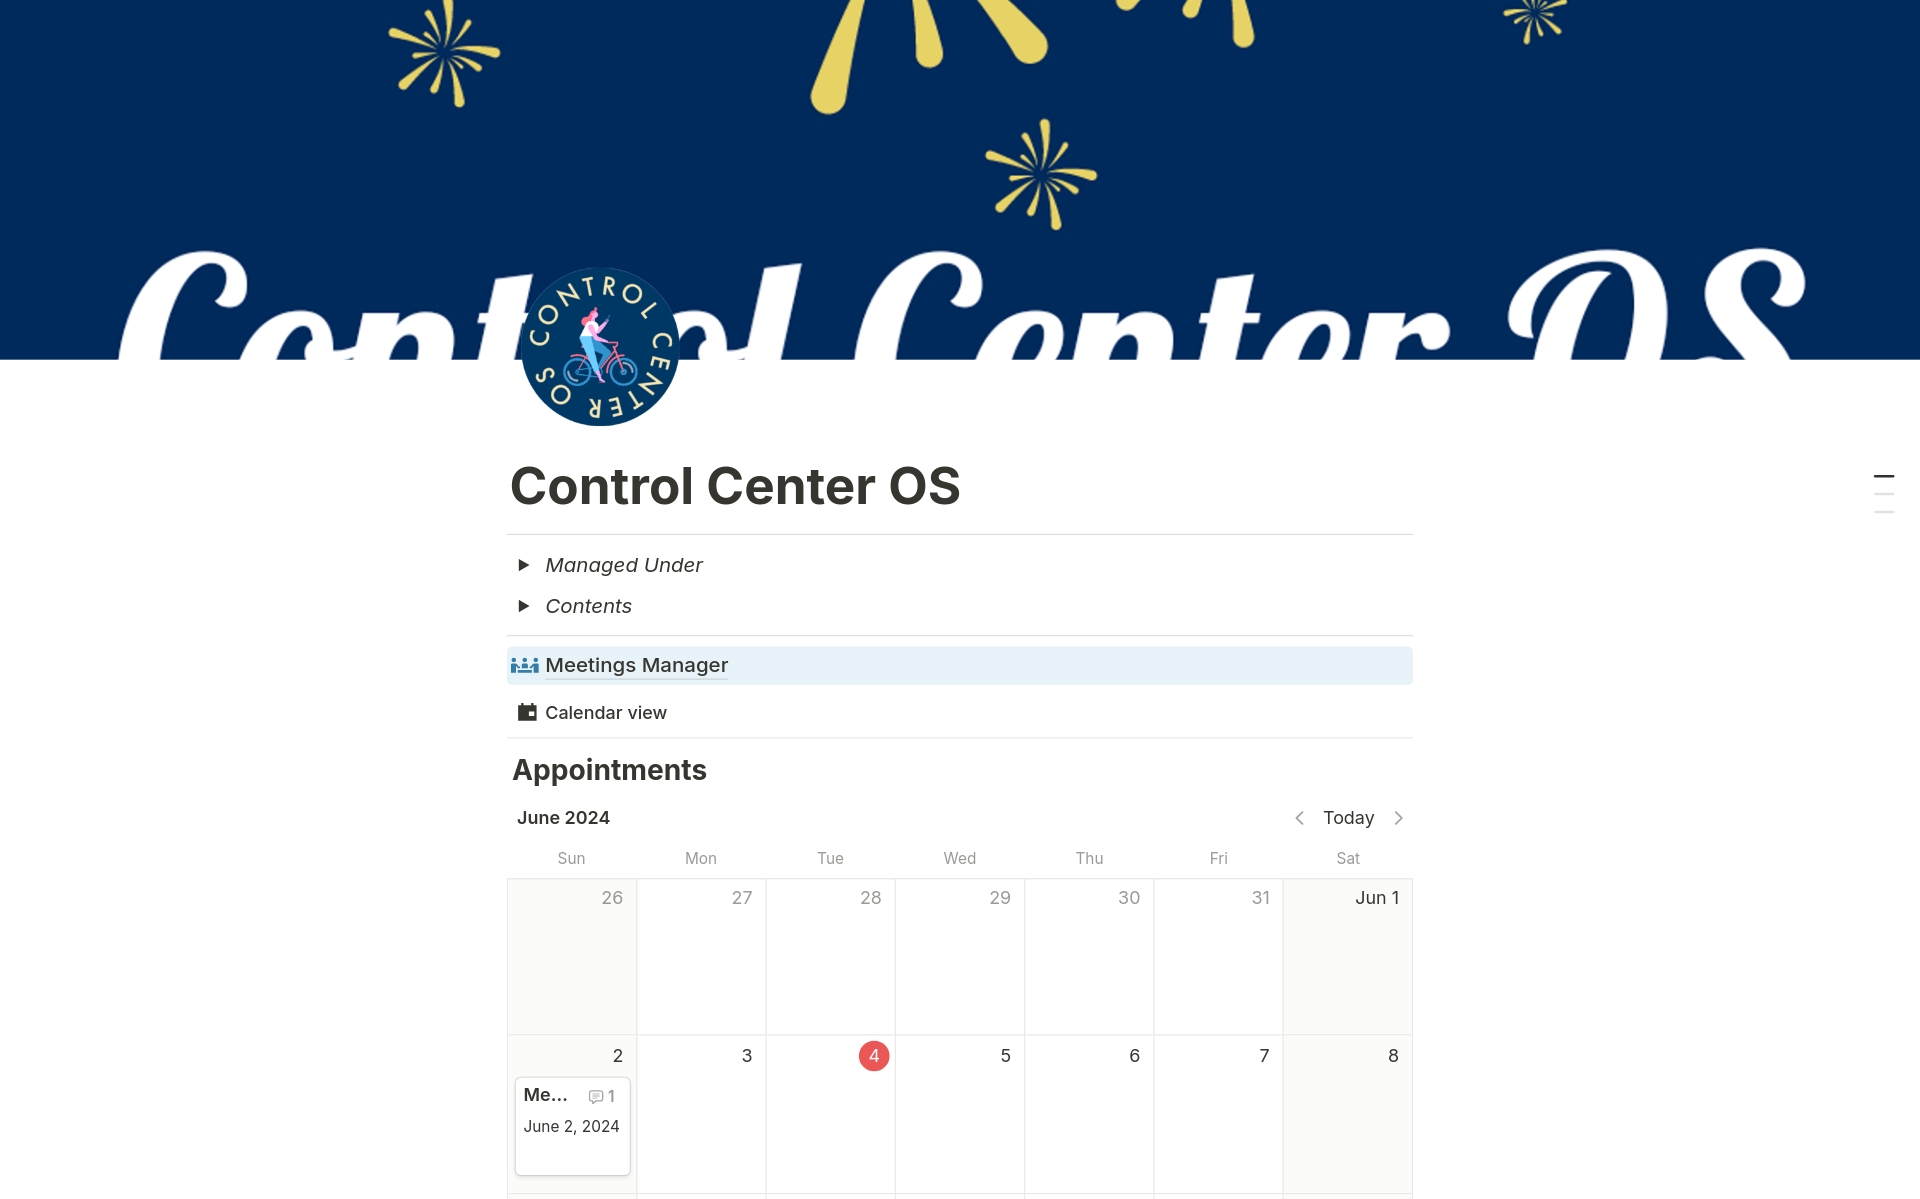 Uma prévia do modelo para Control Center OS 